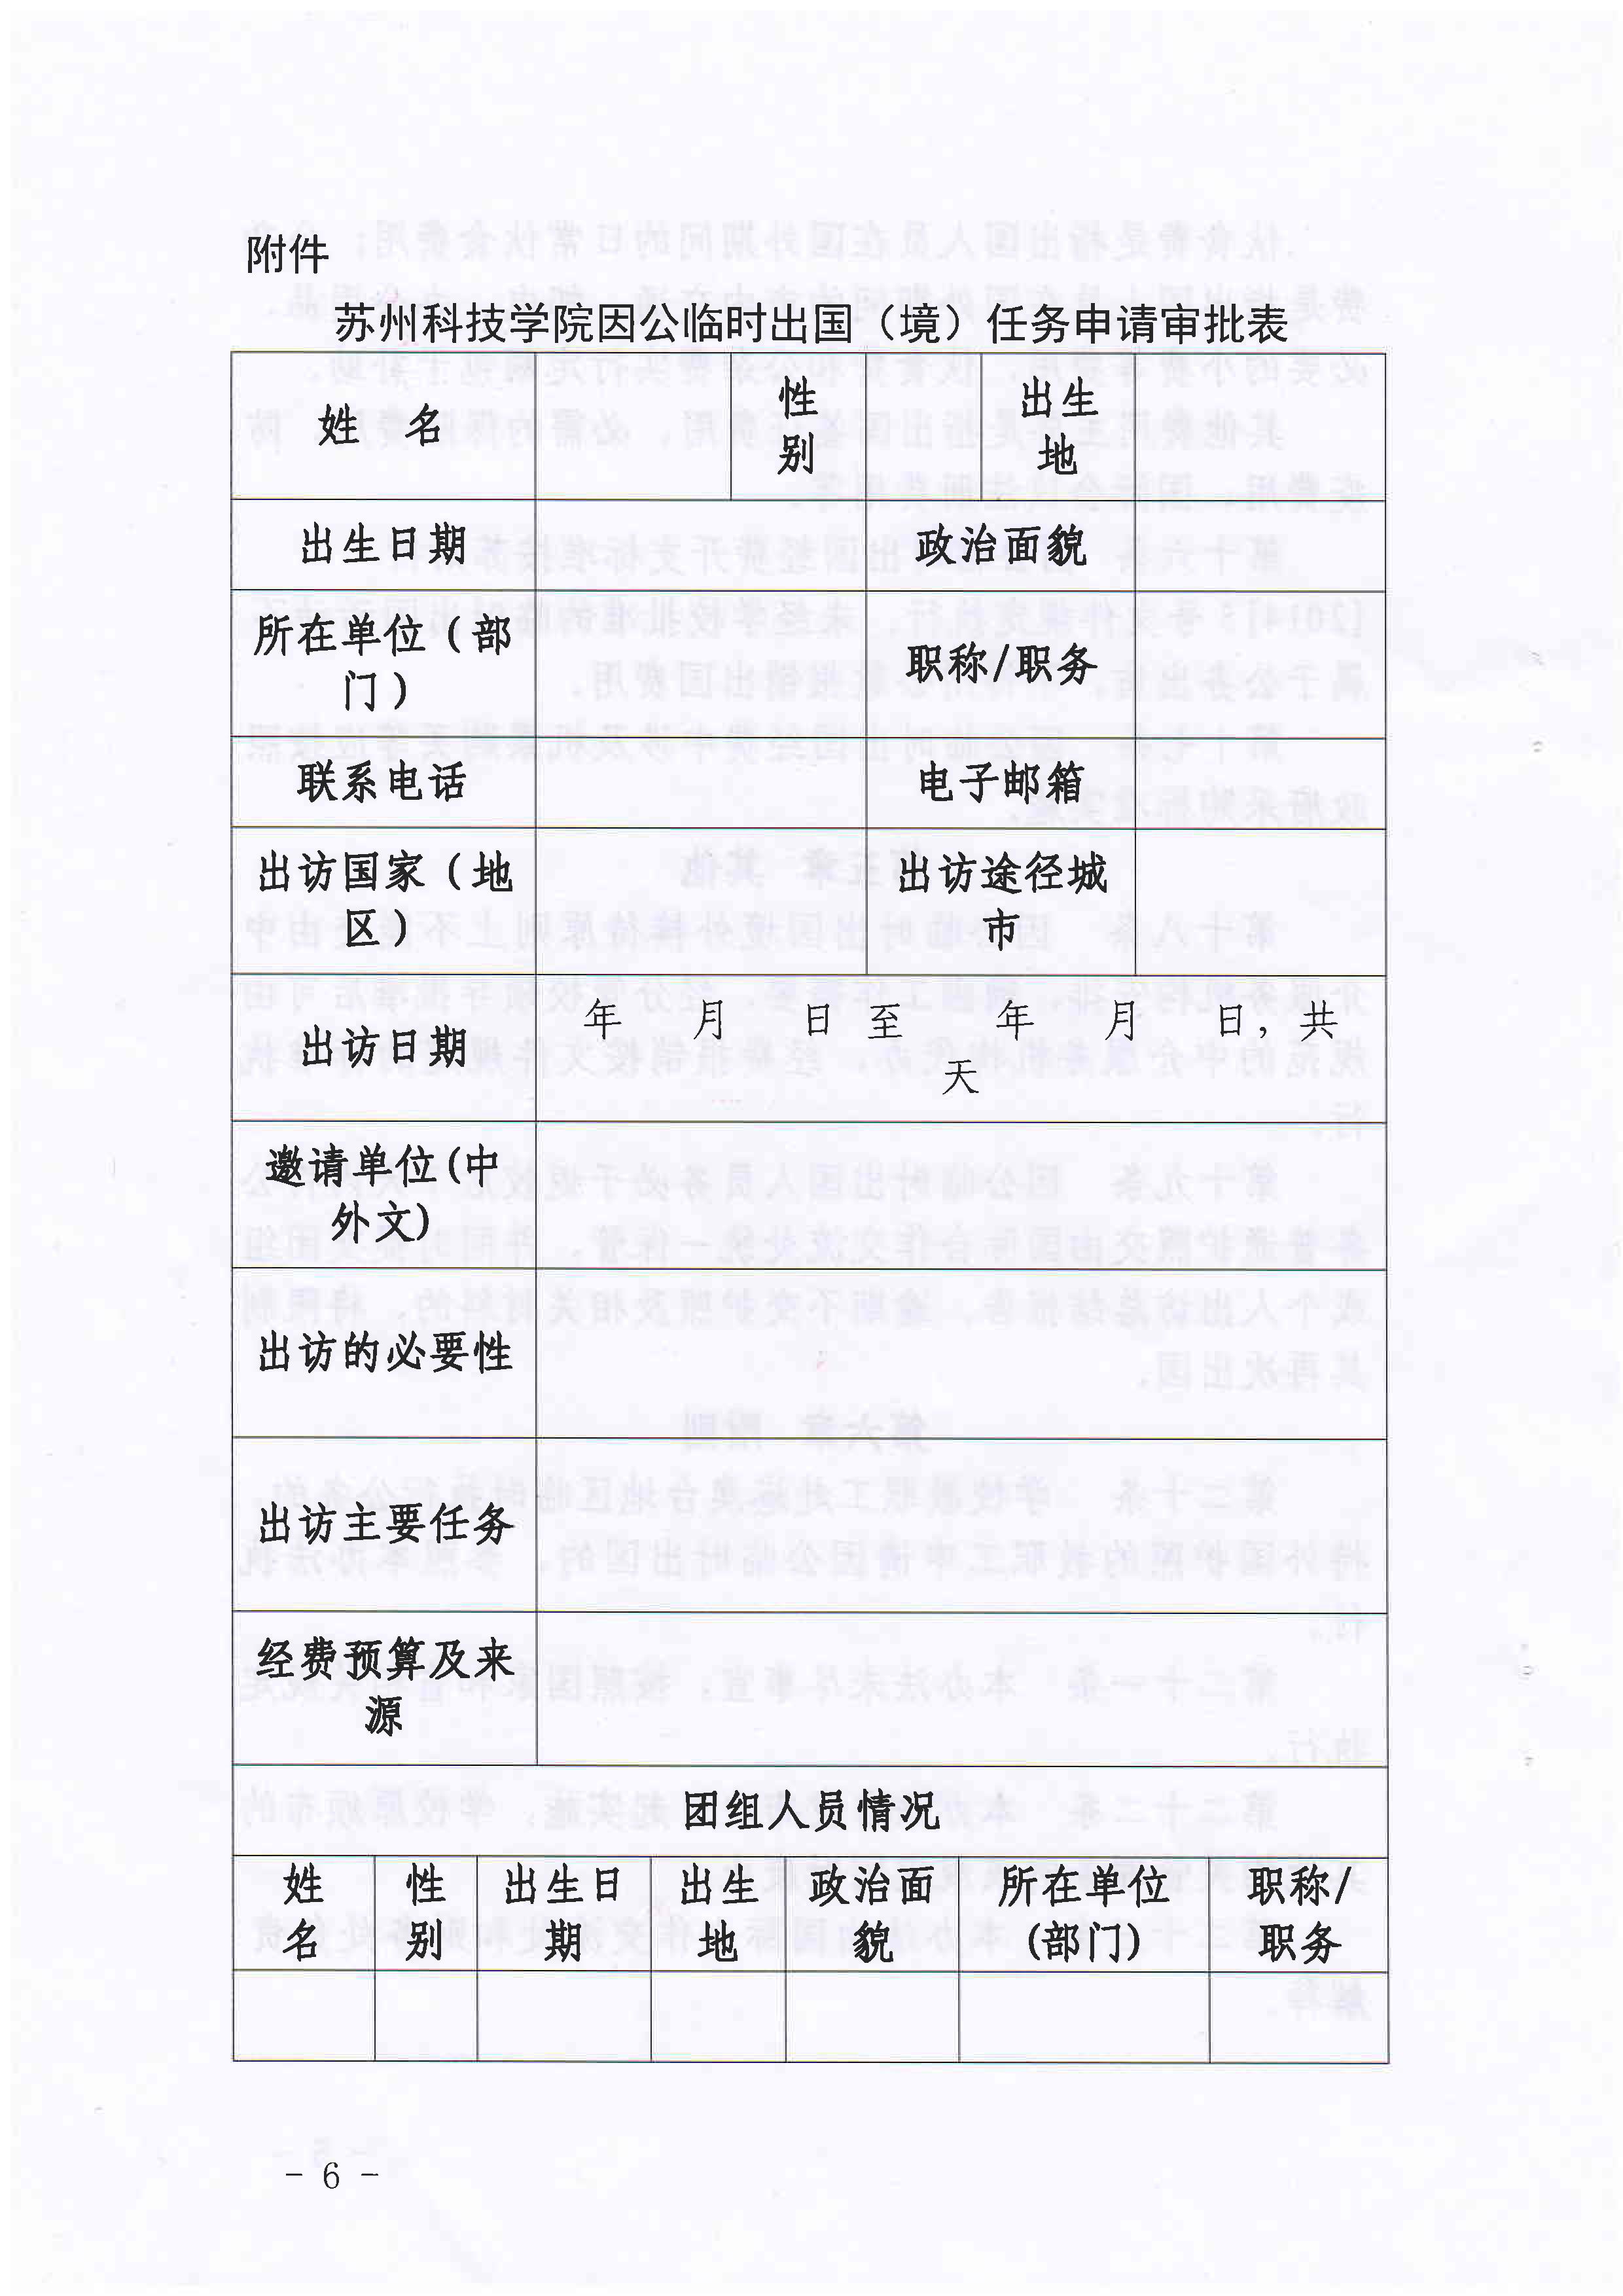 苏州科技学院教职工临时出国管理办法（暂行）_6.jpg